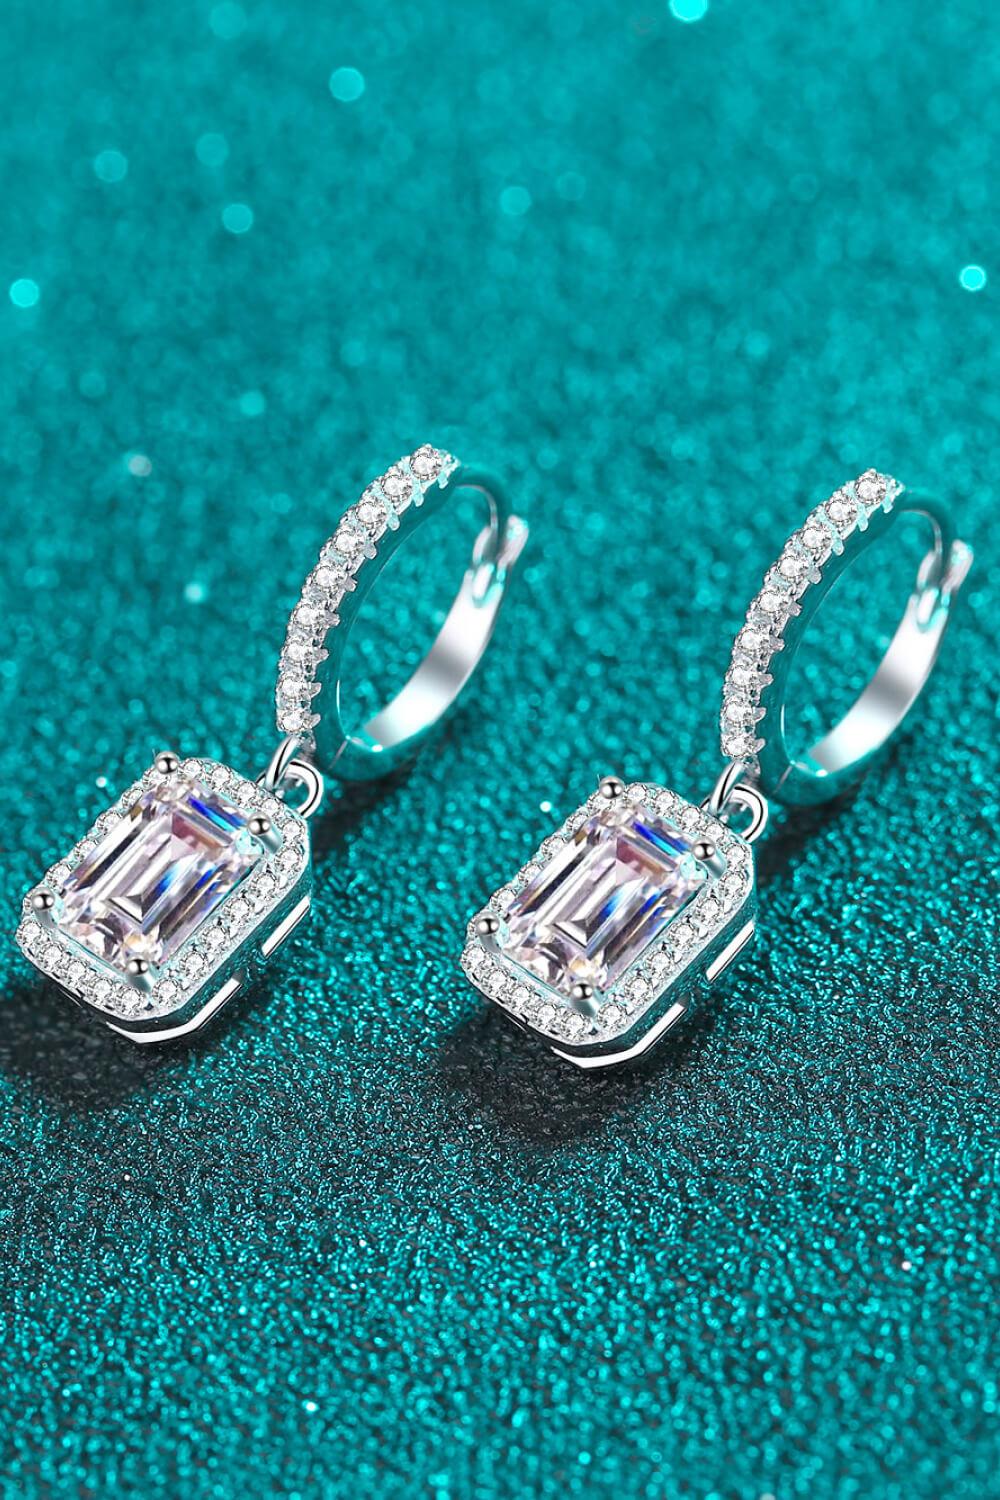 2 Carat Moissanite 925 Sterling Silver Drop Earrings BLUE ZONE PLANET